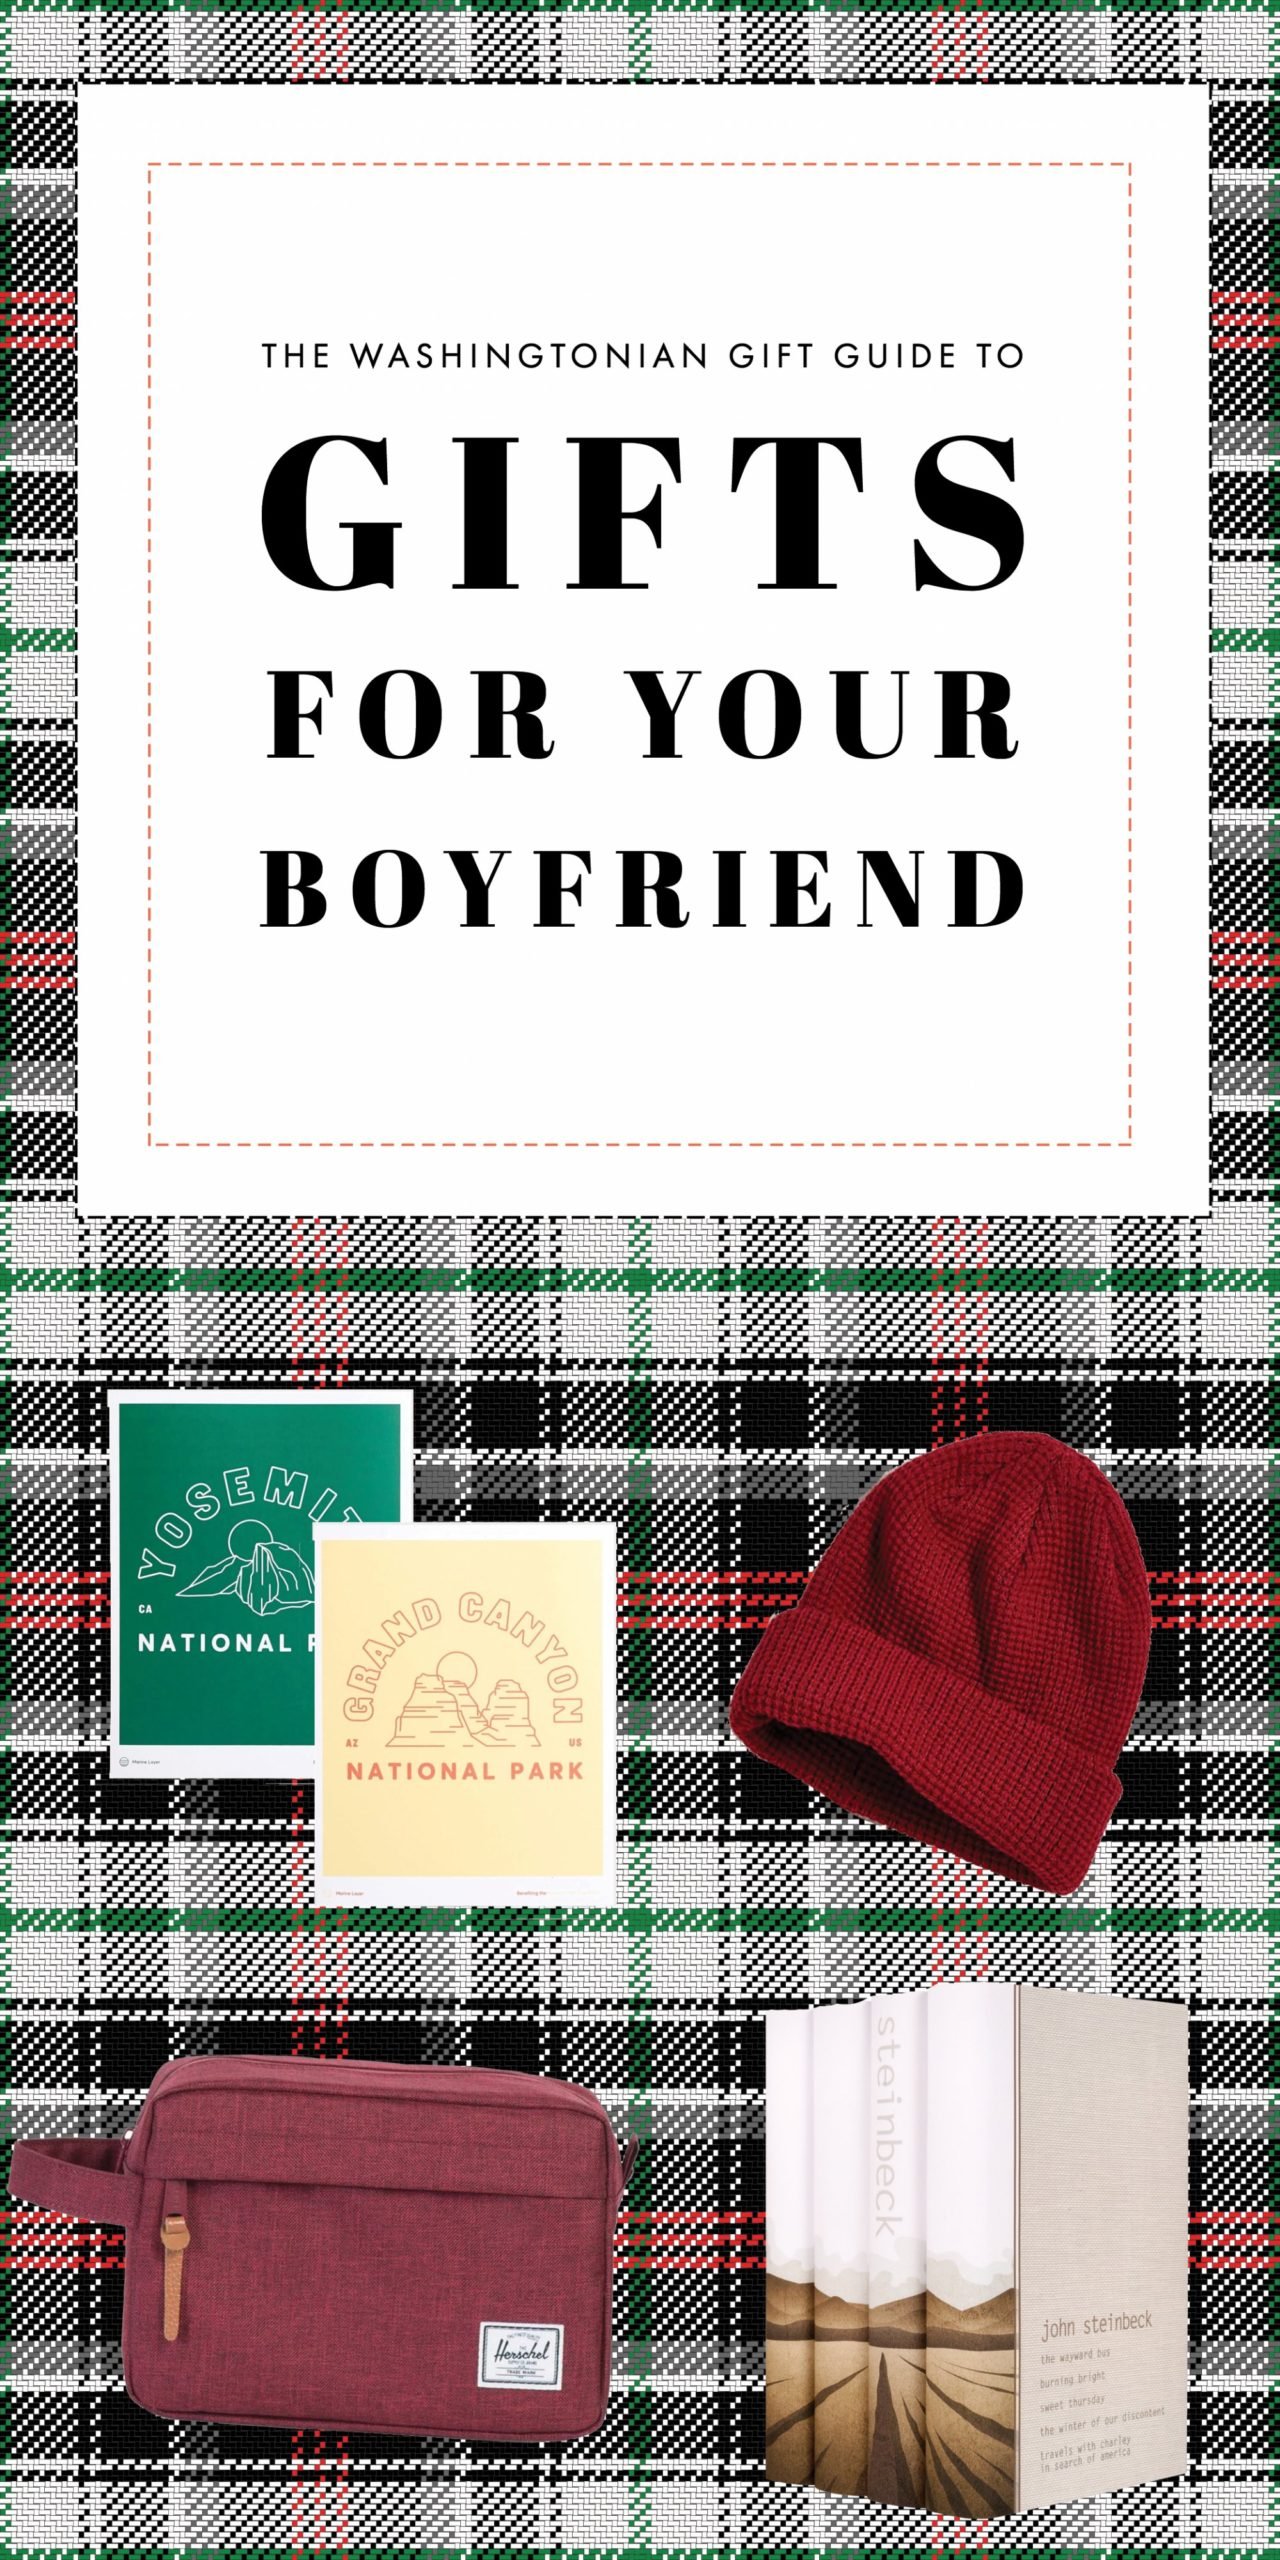 gifts for hood boyfriend